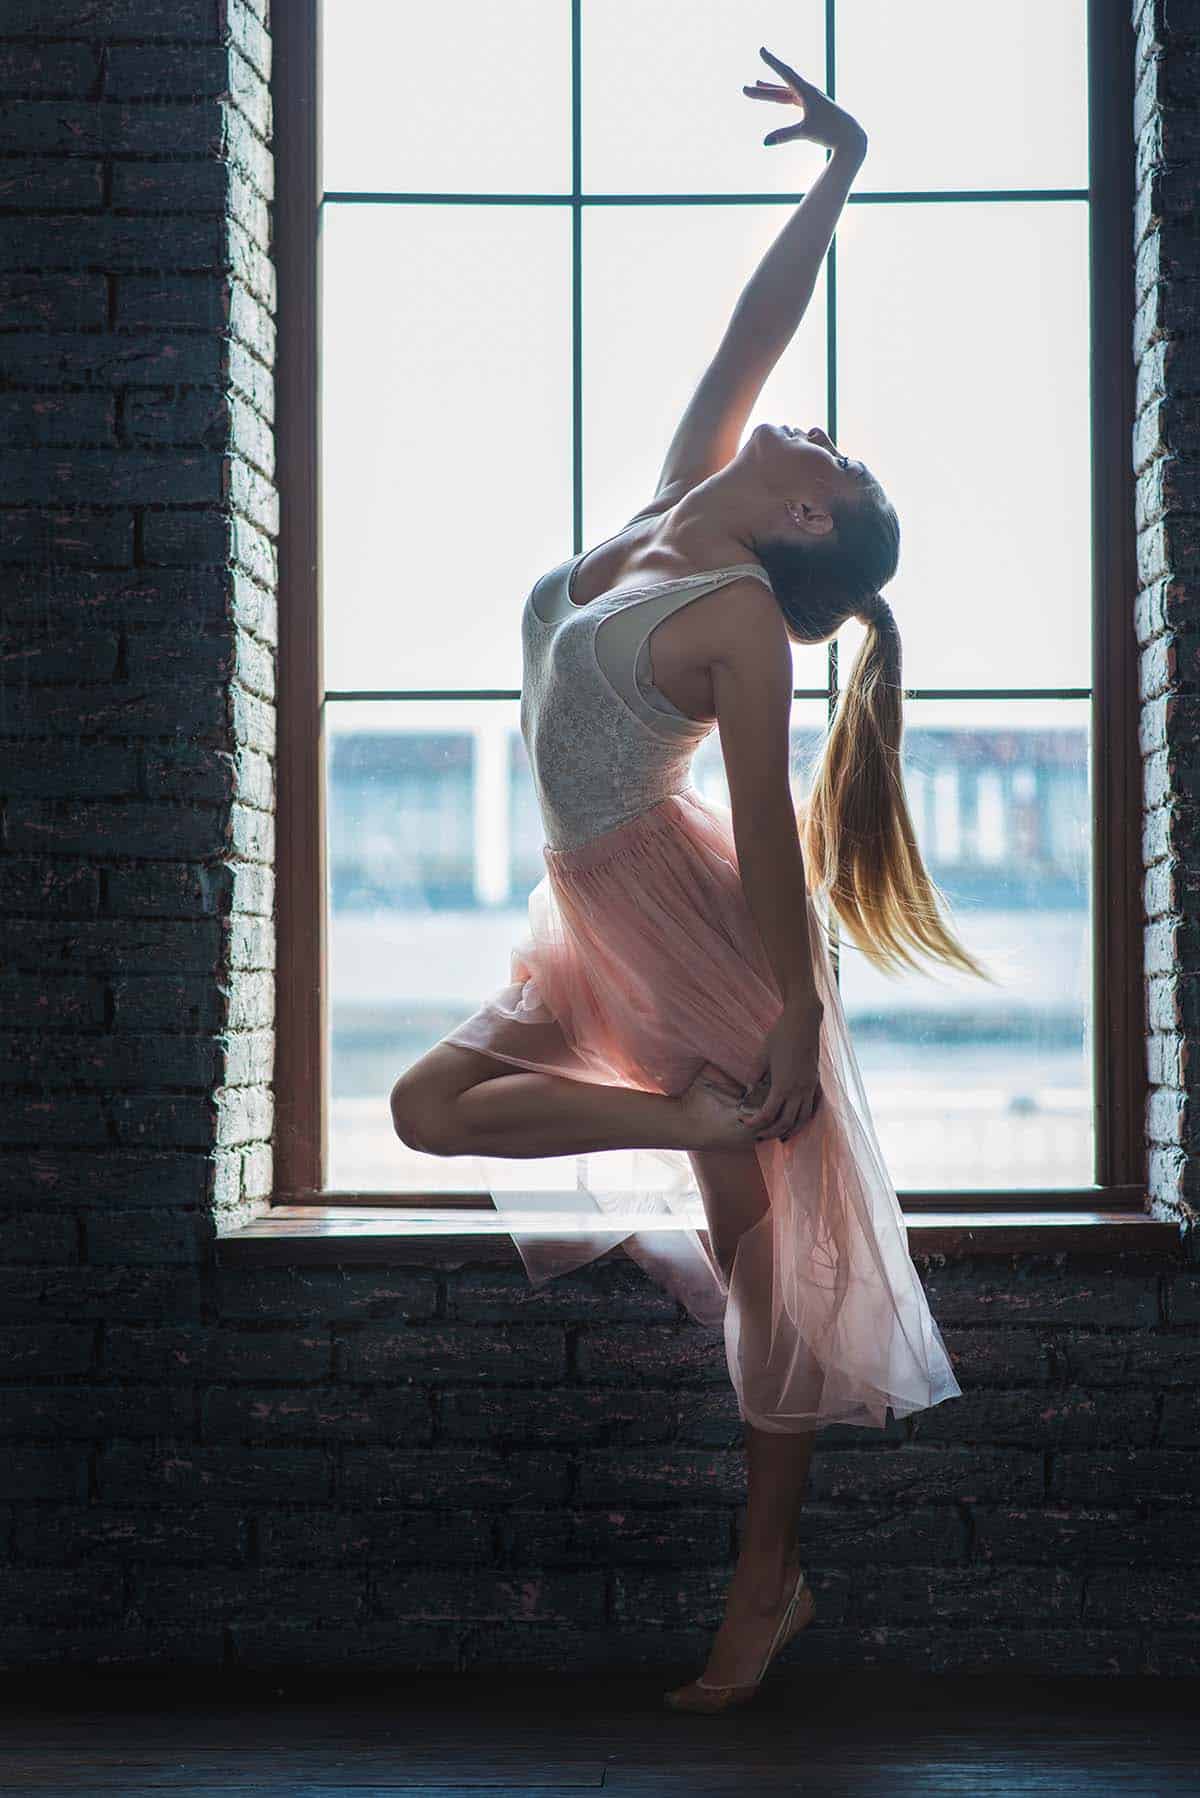 Dancer in Front of Window